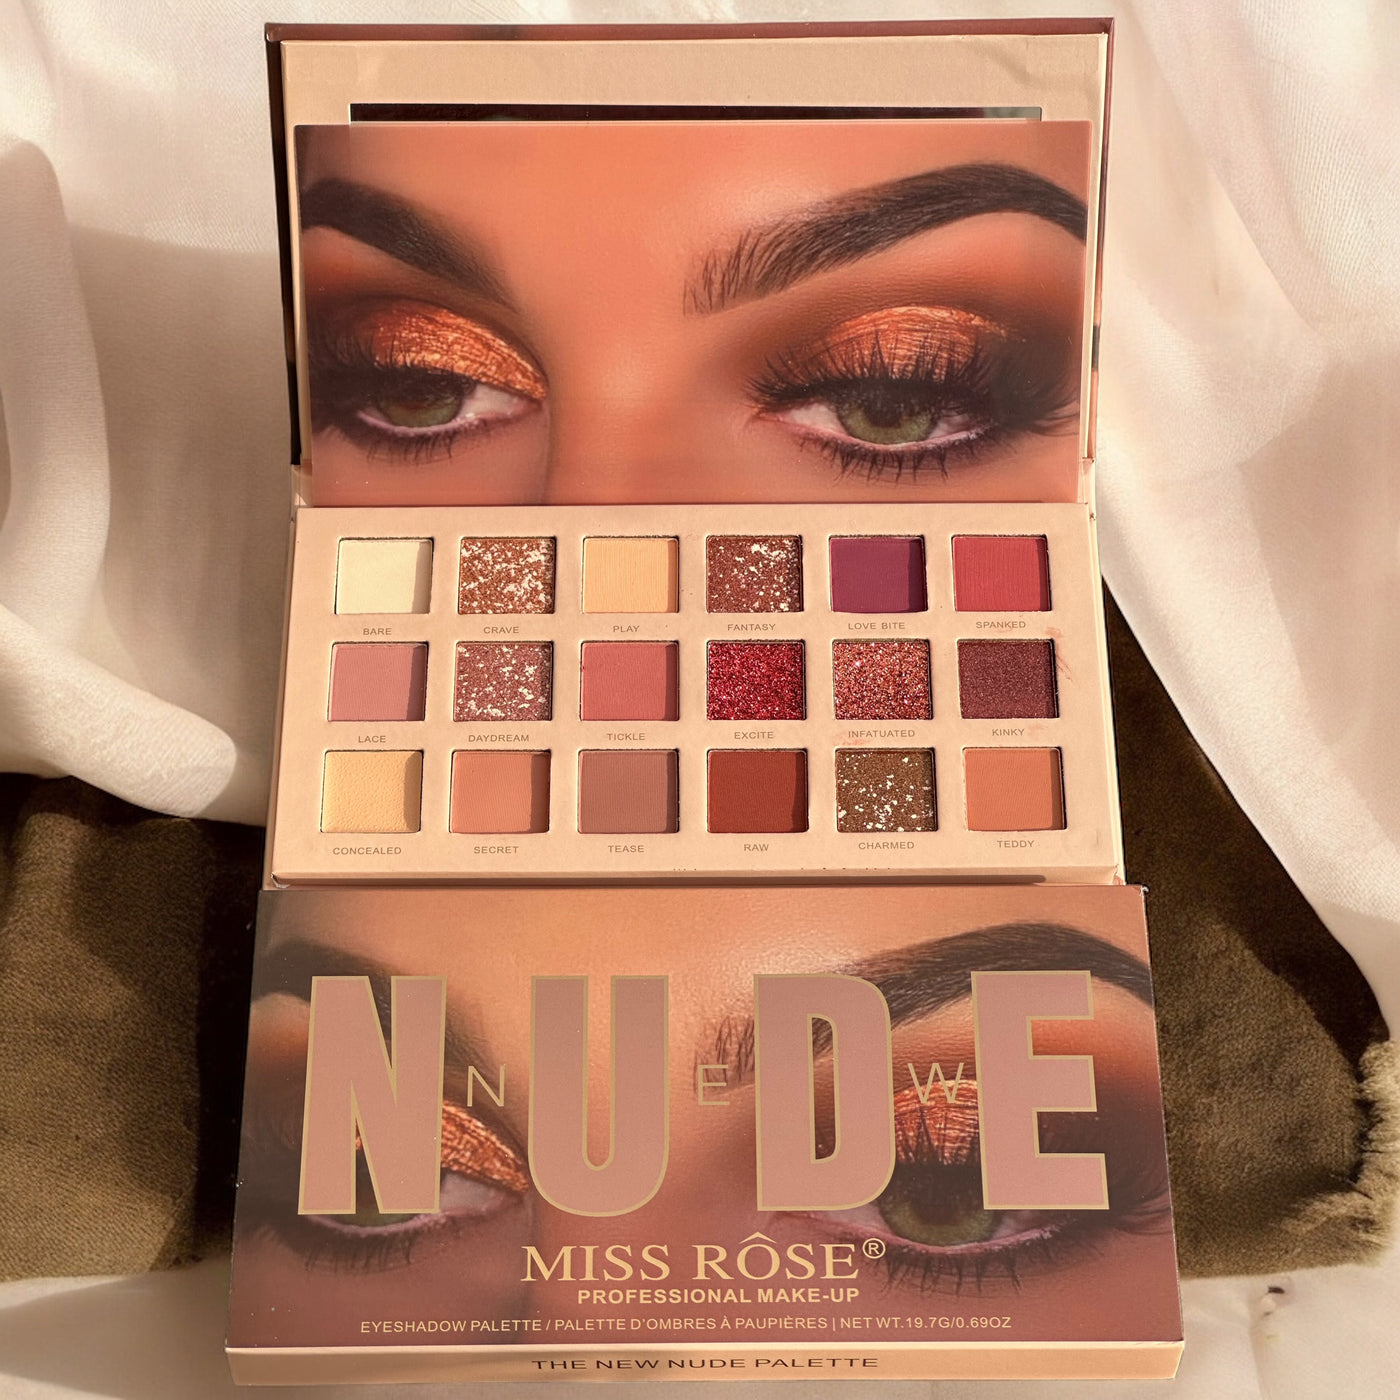 Miss Rose Nude Eyeshadow Palette